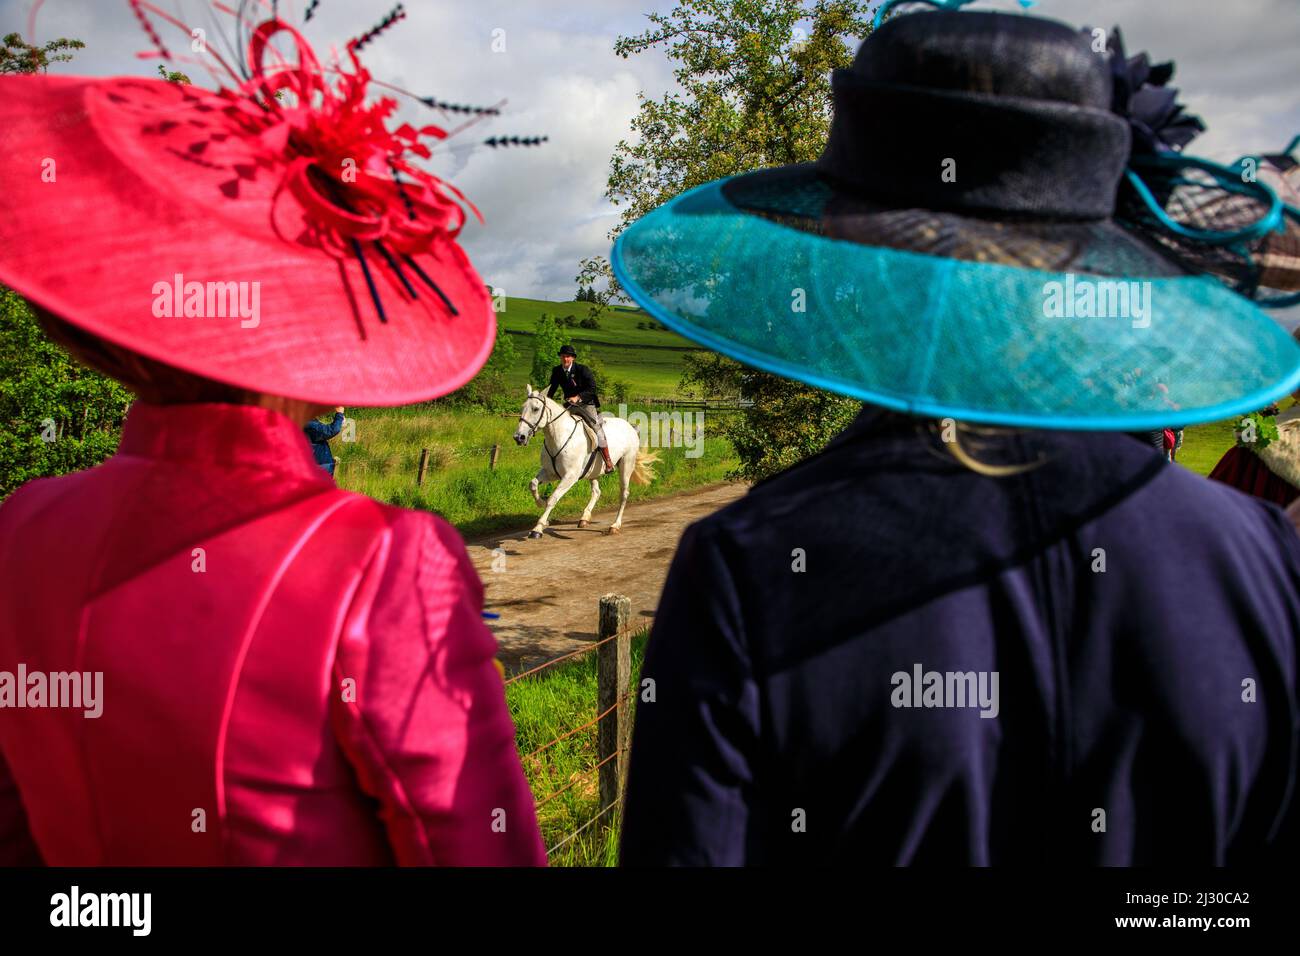 Spettatori, corse di cavalli, cross country, tradizionali, Hawick Common Ridings, Ospiti d'onore, cappelli eleganti, Borders, Scozia, Regno Unito Foto Stock